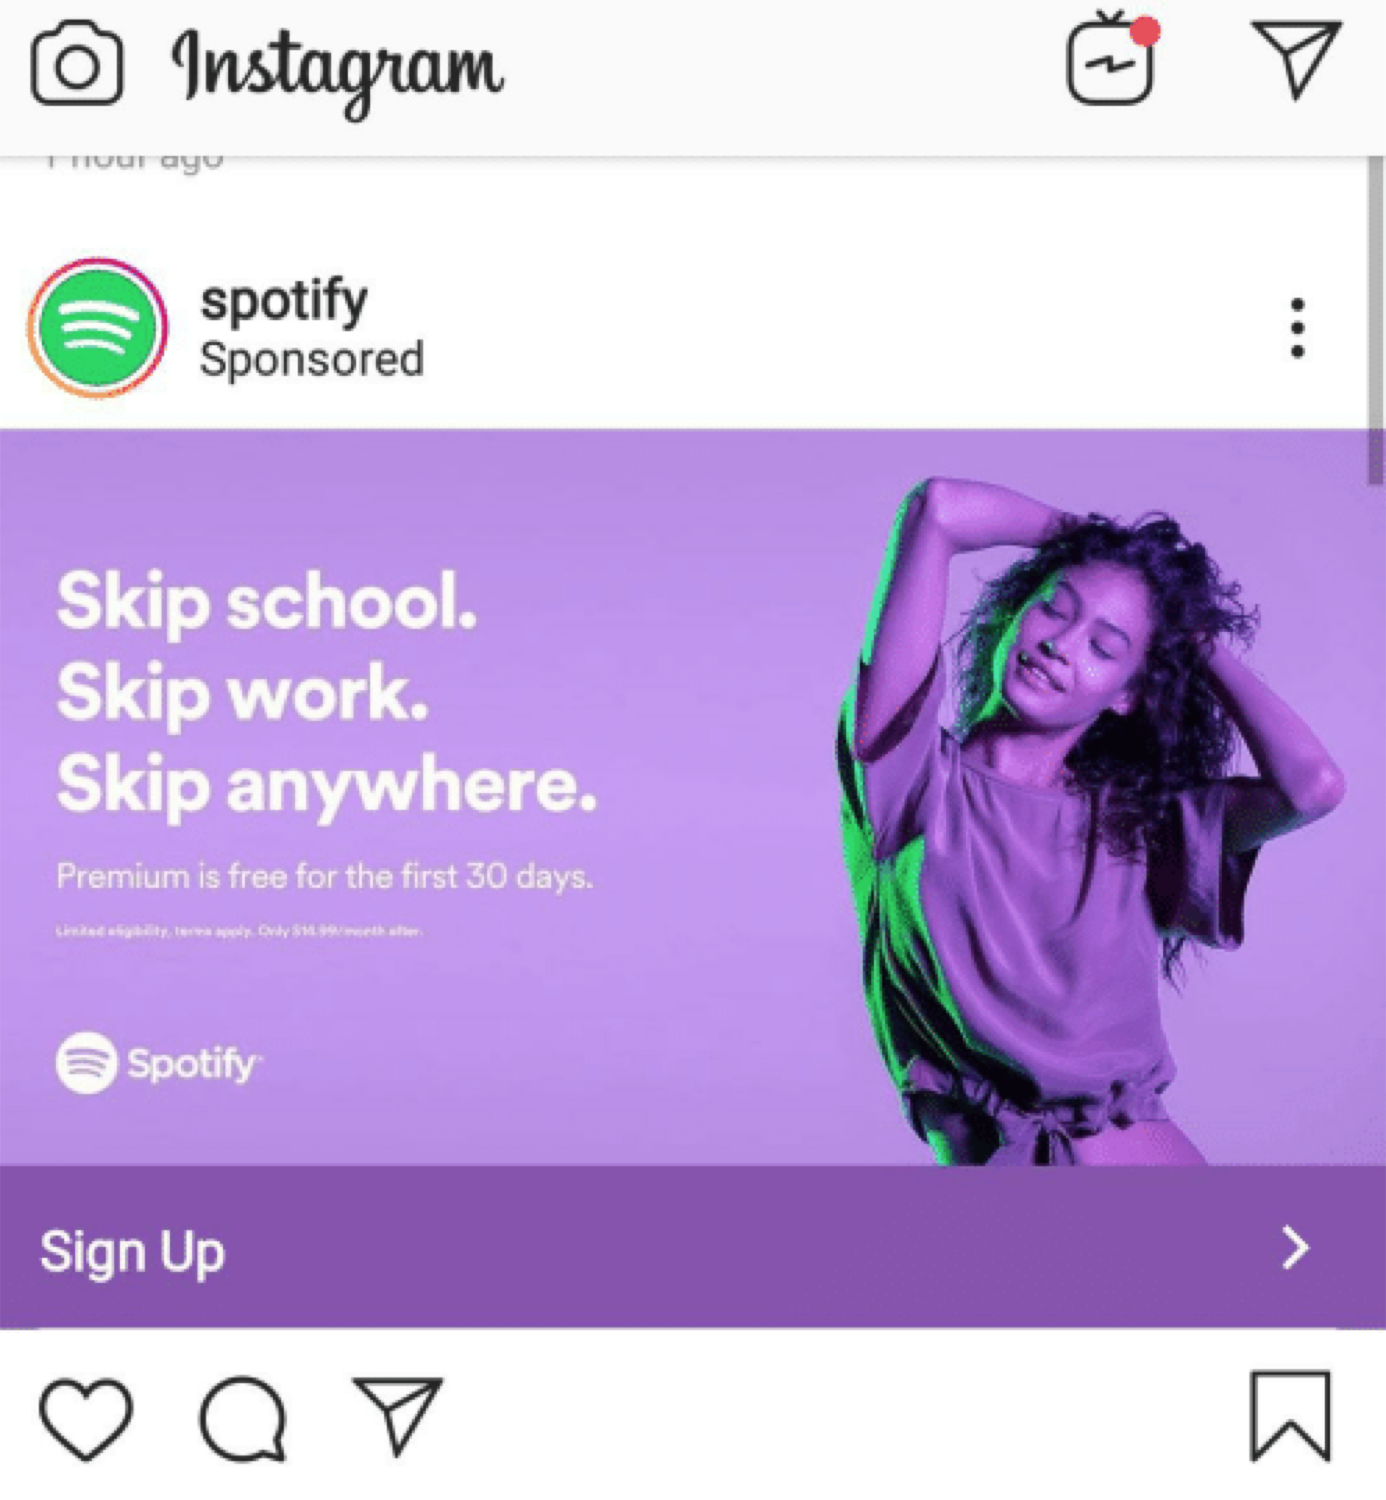 Ein Beispiel für eine Instagram-Anzeige